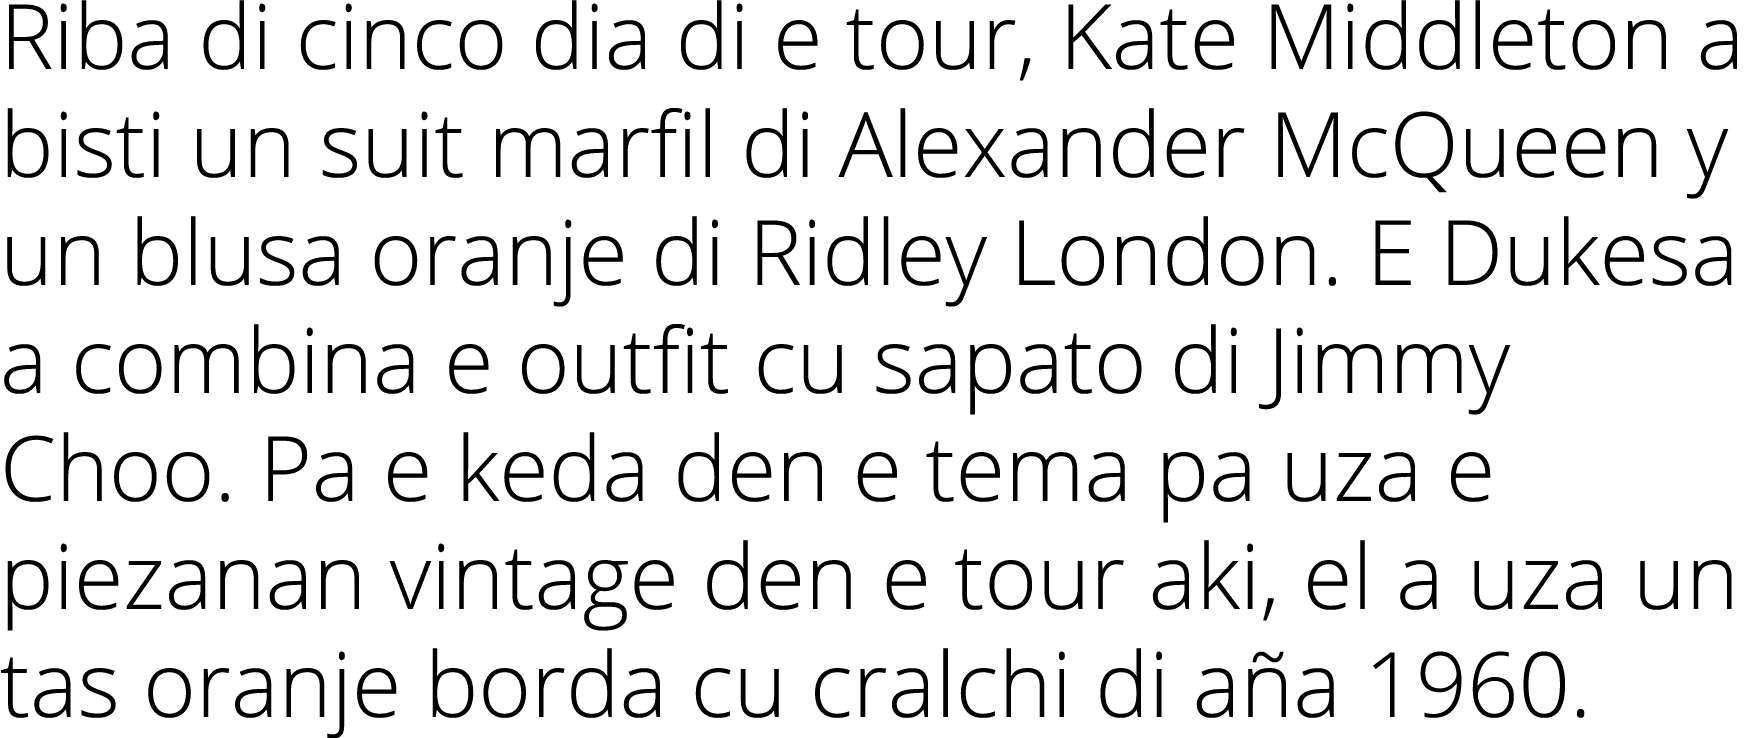 Riba di cinco dia di e tour, Kate Middleton a bisti un suit marfil di Alexander McQueen y un blusa oranje di Ridley L   